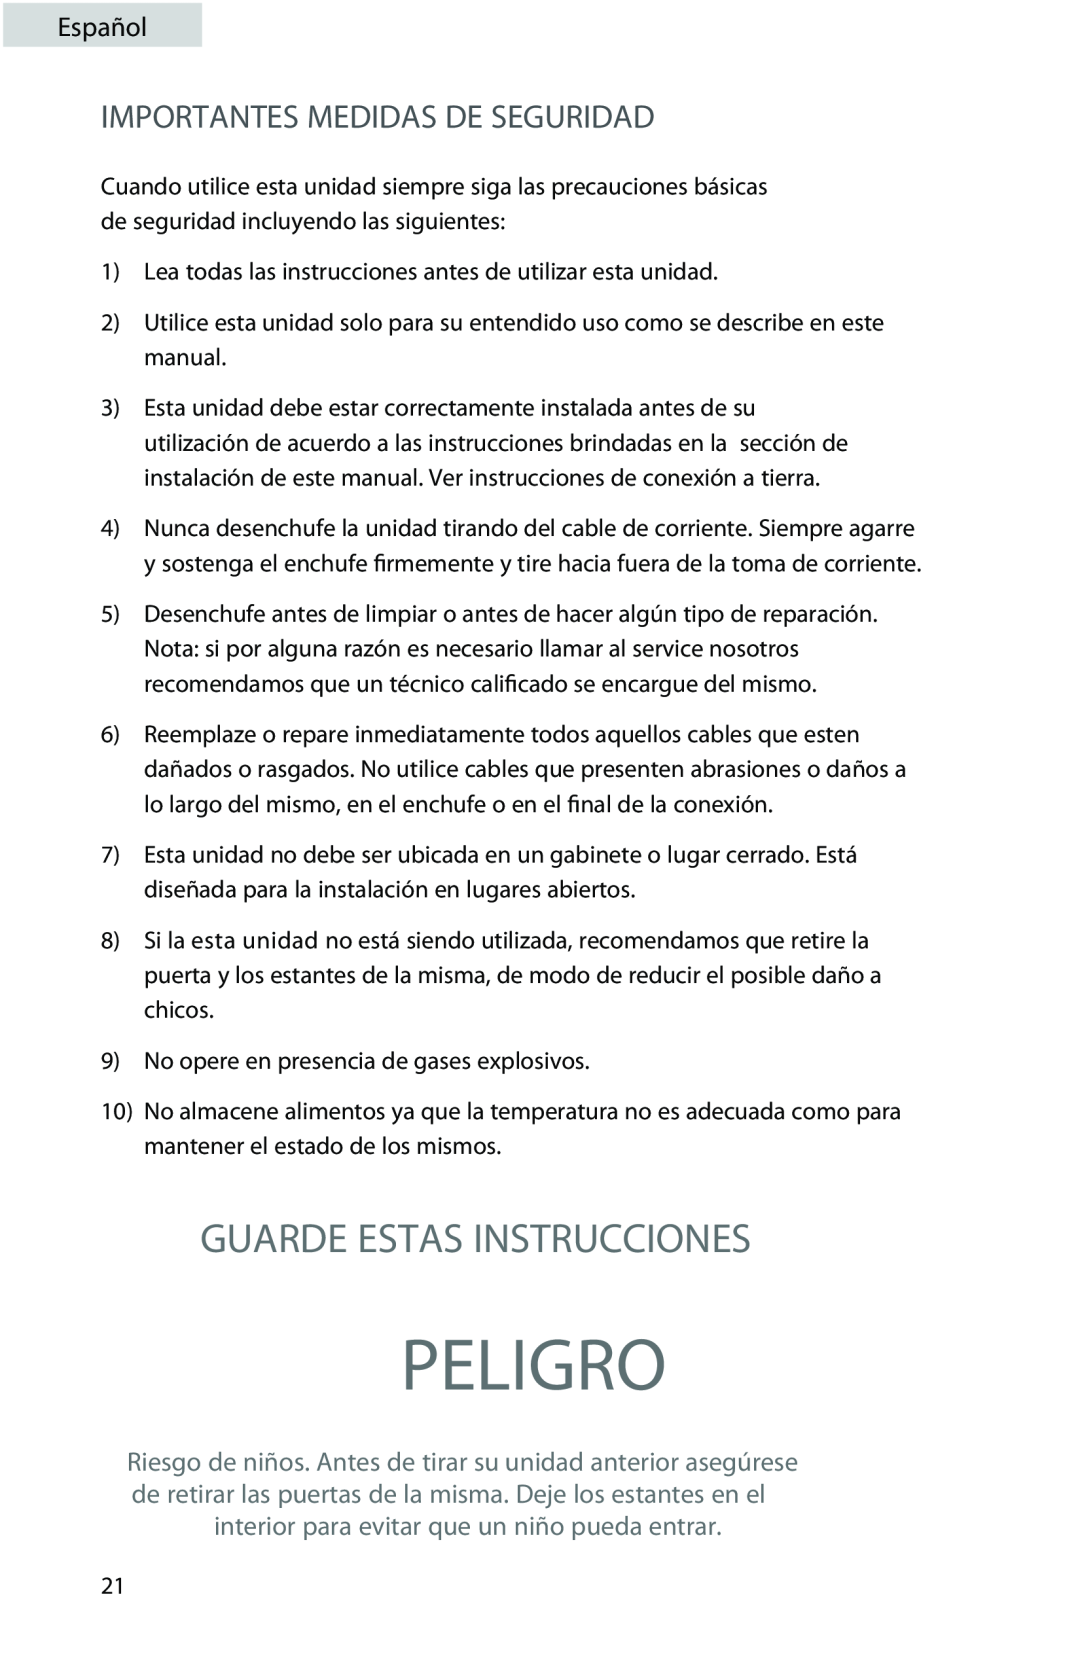 Professional Series PS72001 user manual Peligro, Guarde Estas Instrucciones, Importantes Medidas De Seguridad, Español 